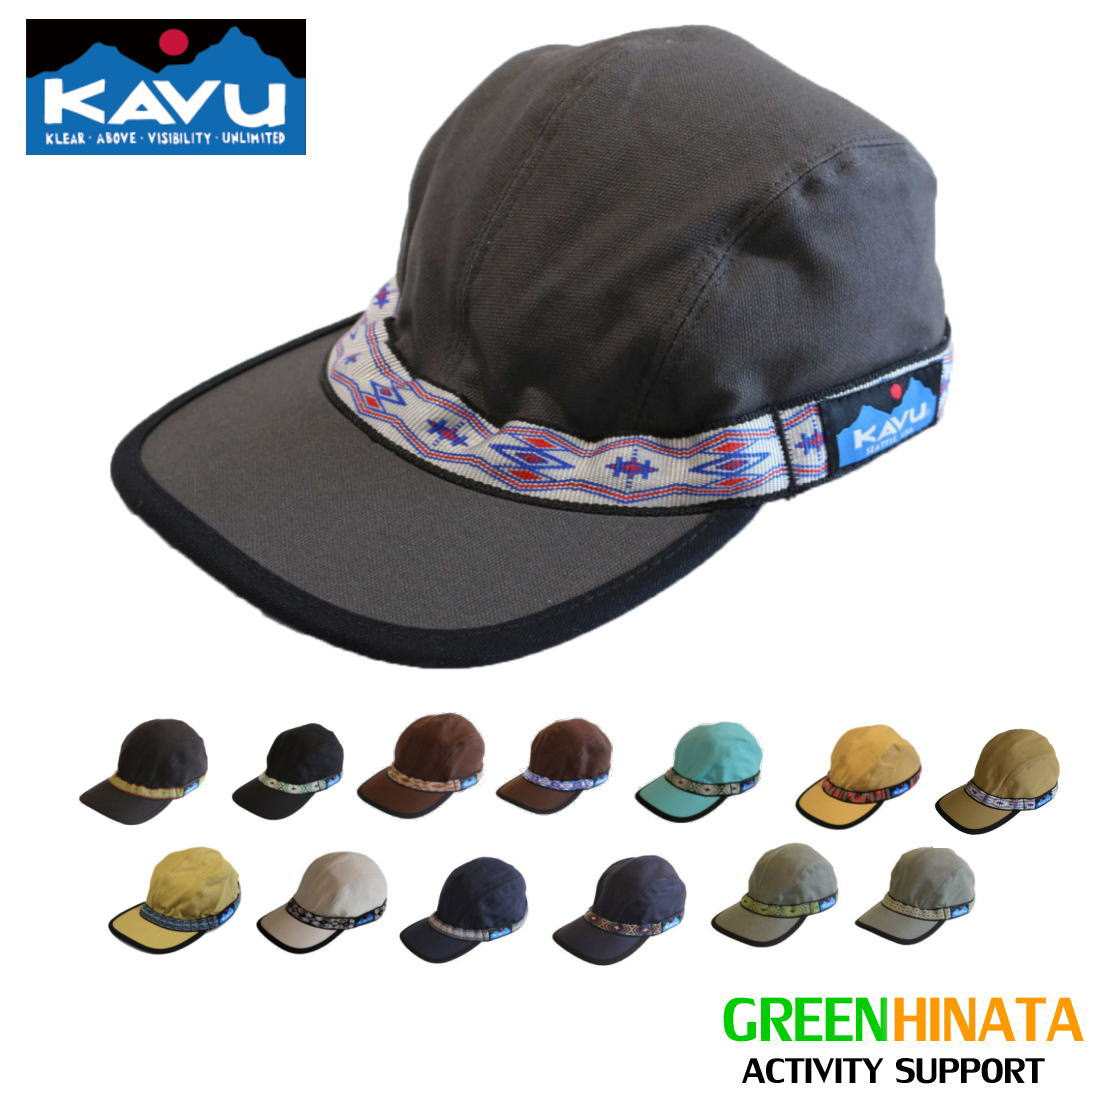  カブー ストラップキャップ 帽子 KAVU STRAP CAP コットン キャップ